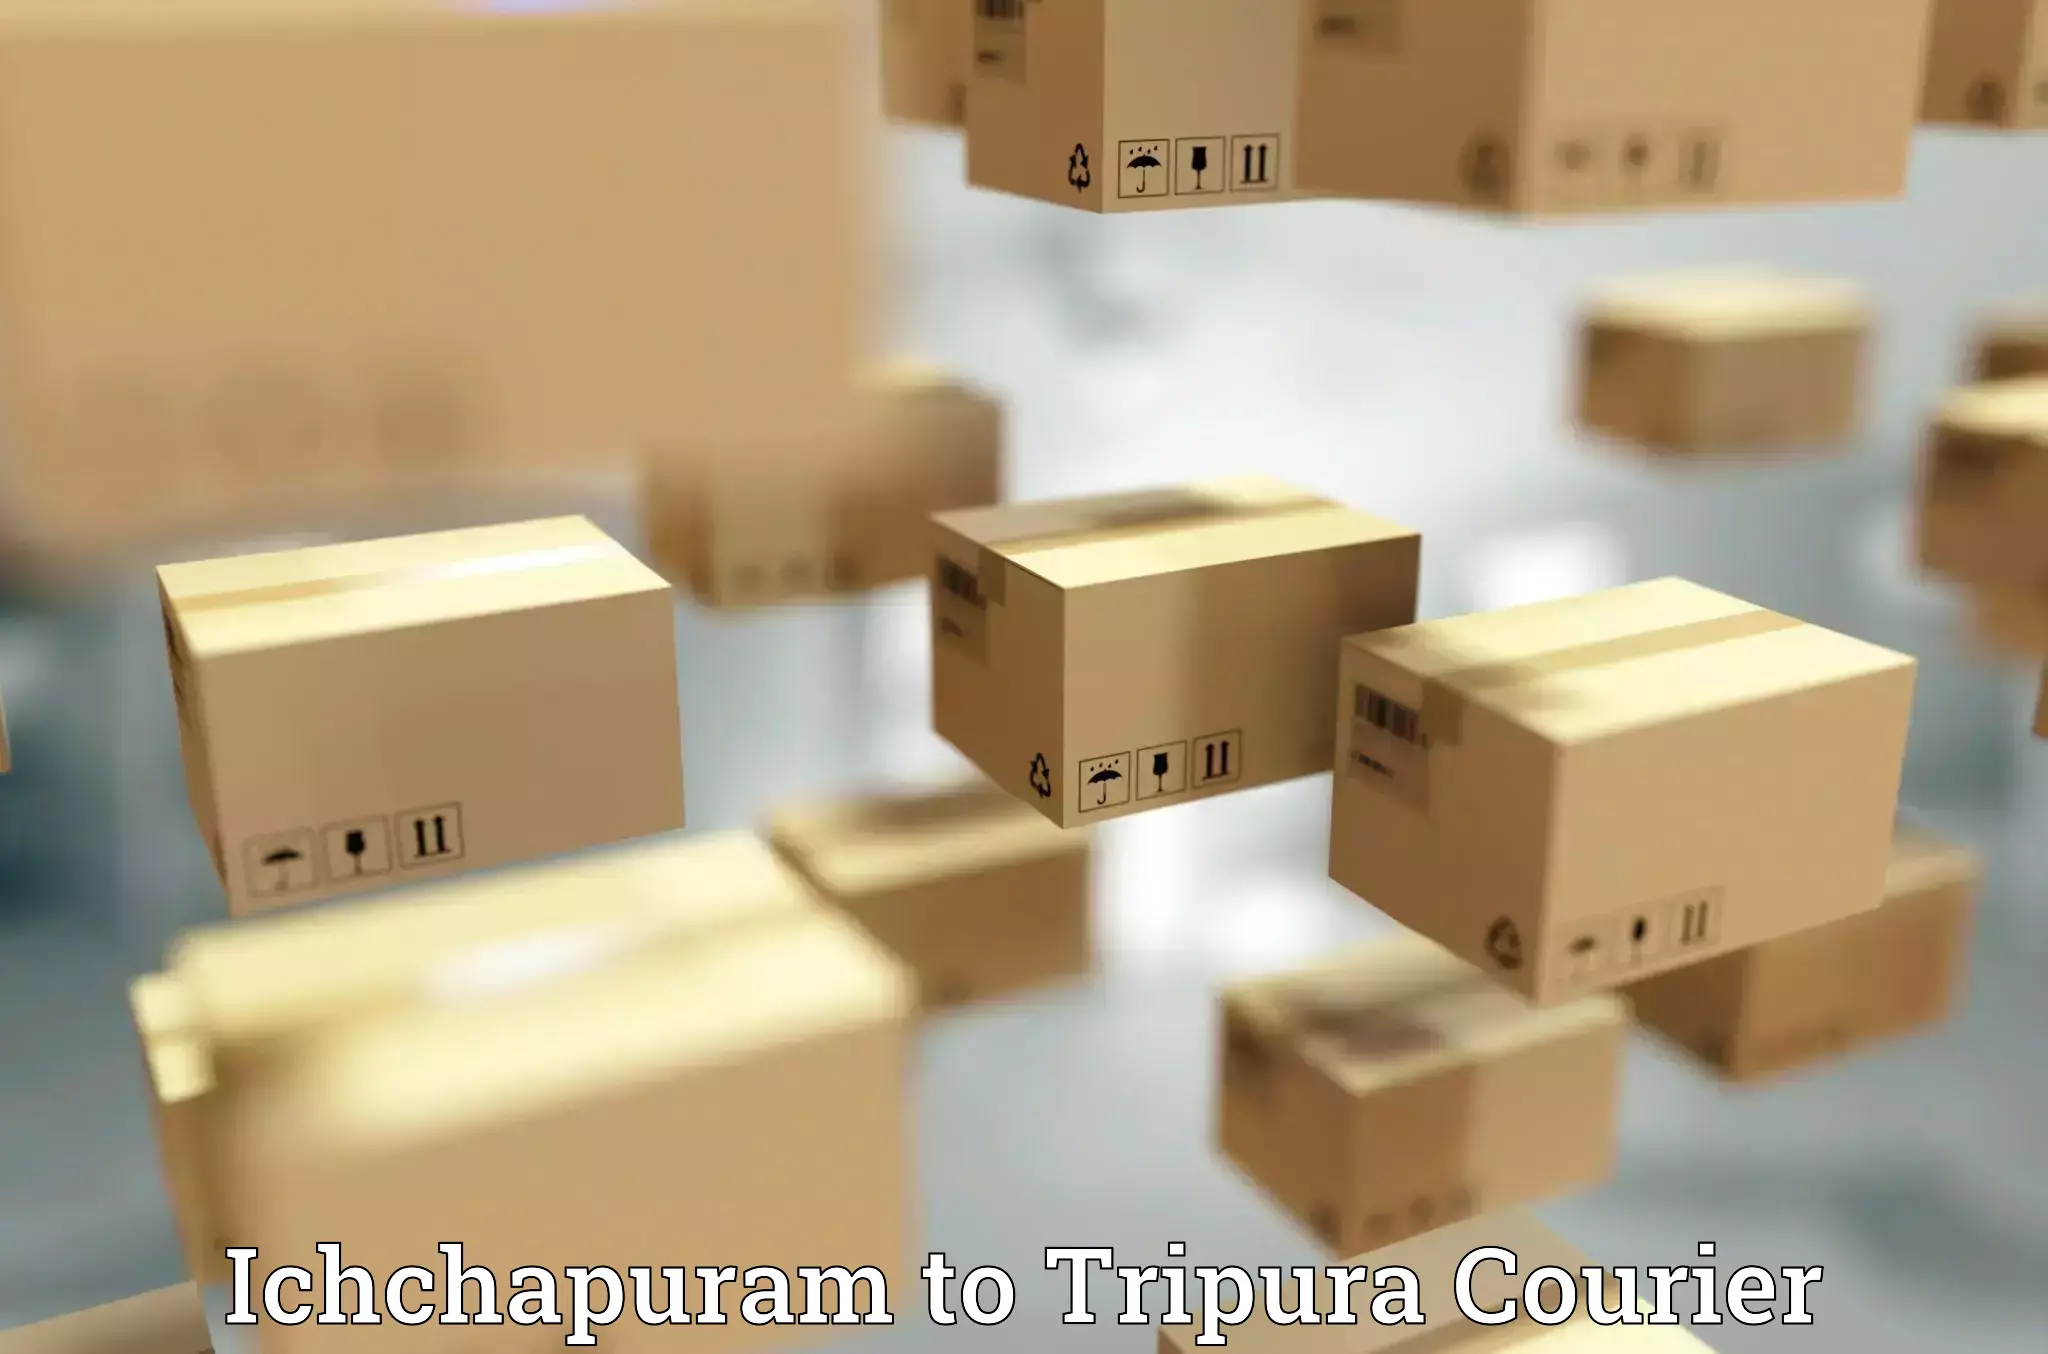 Reliable courier services in Ichchapuram to Ambassa